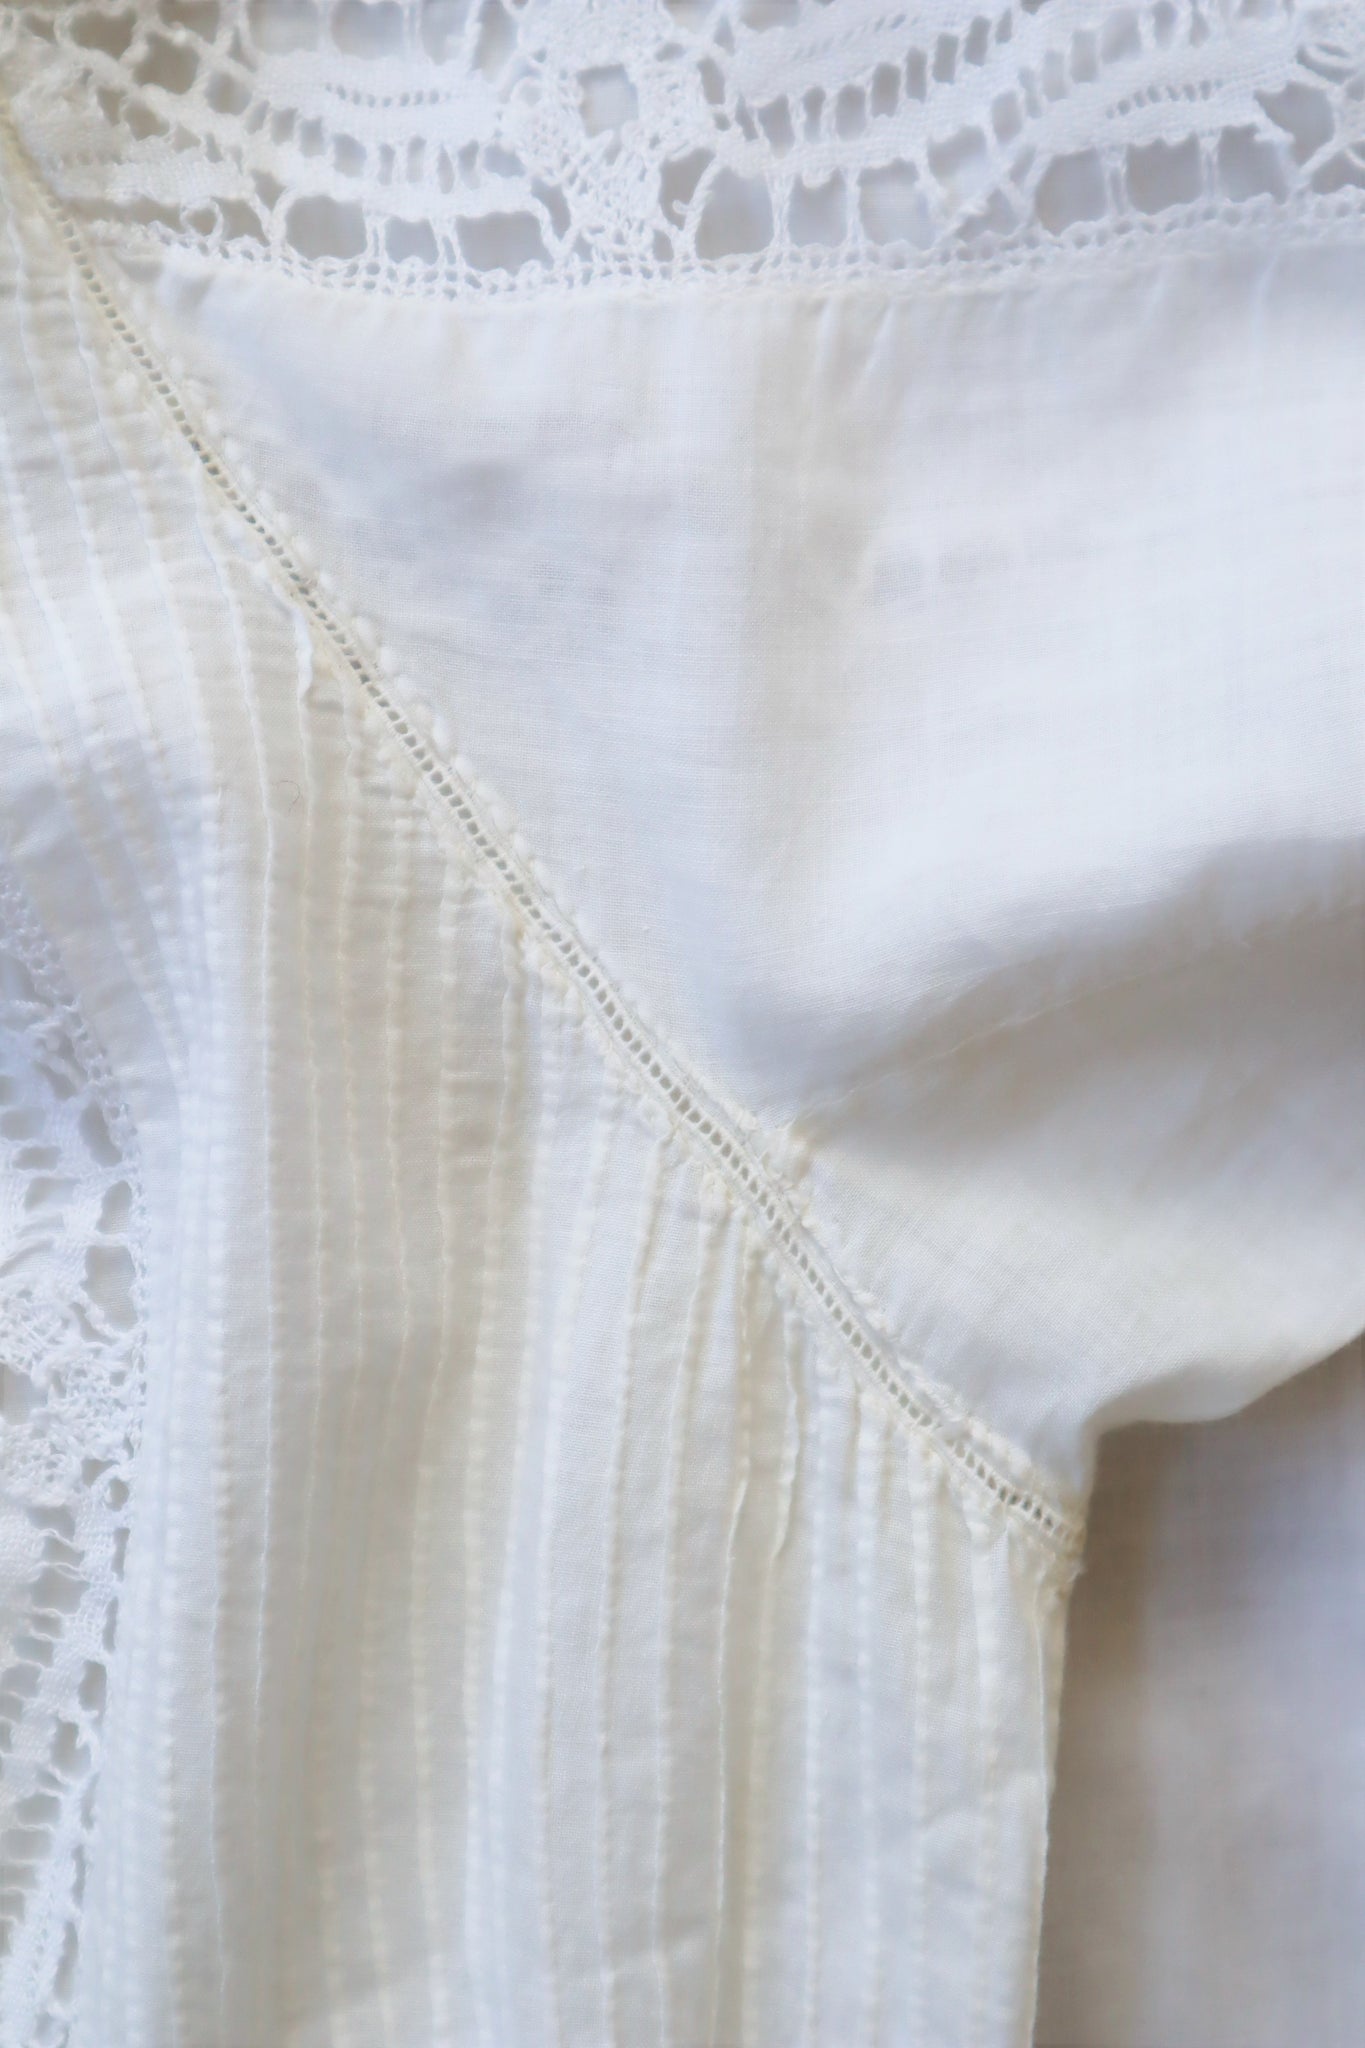 1910s Edwardian White Lawn Cotton Lace Dress